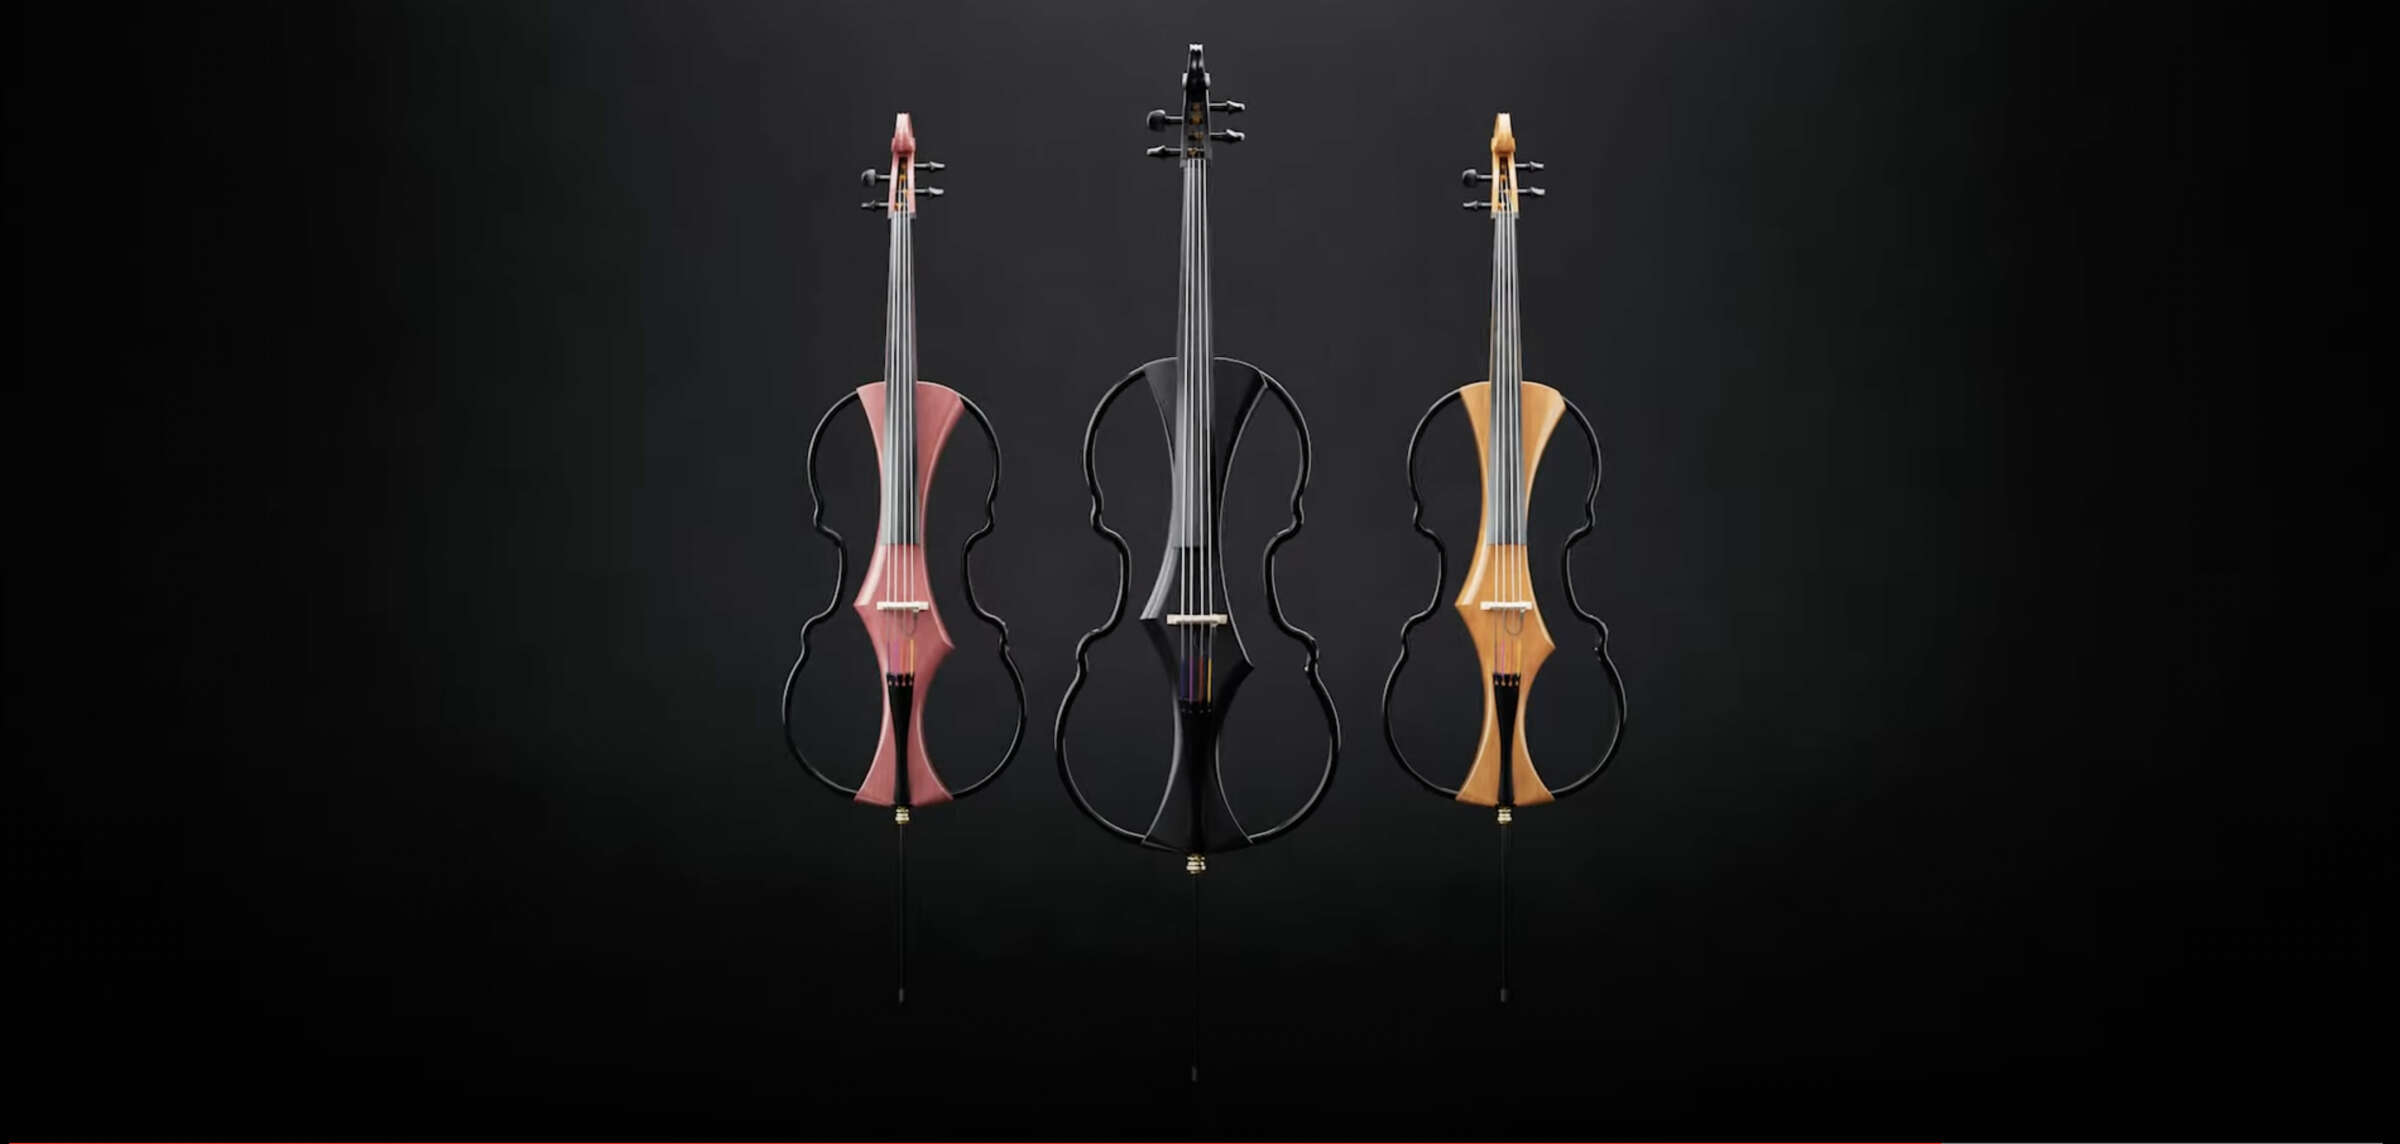 GEWA Music veröffentlicht neues E-Cello Novita 3.0